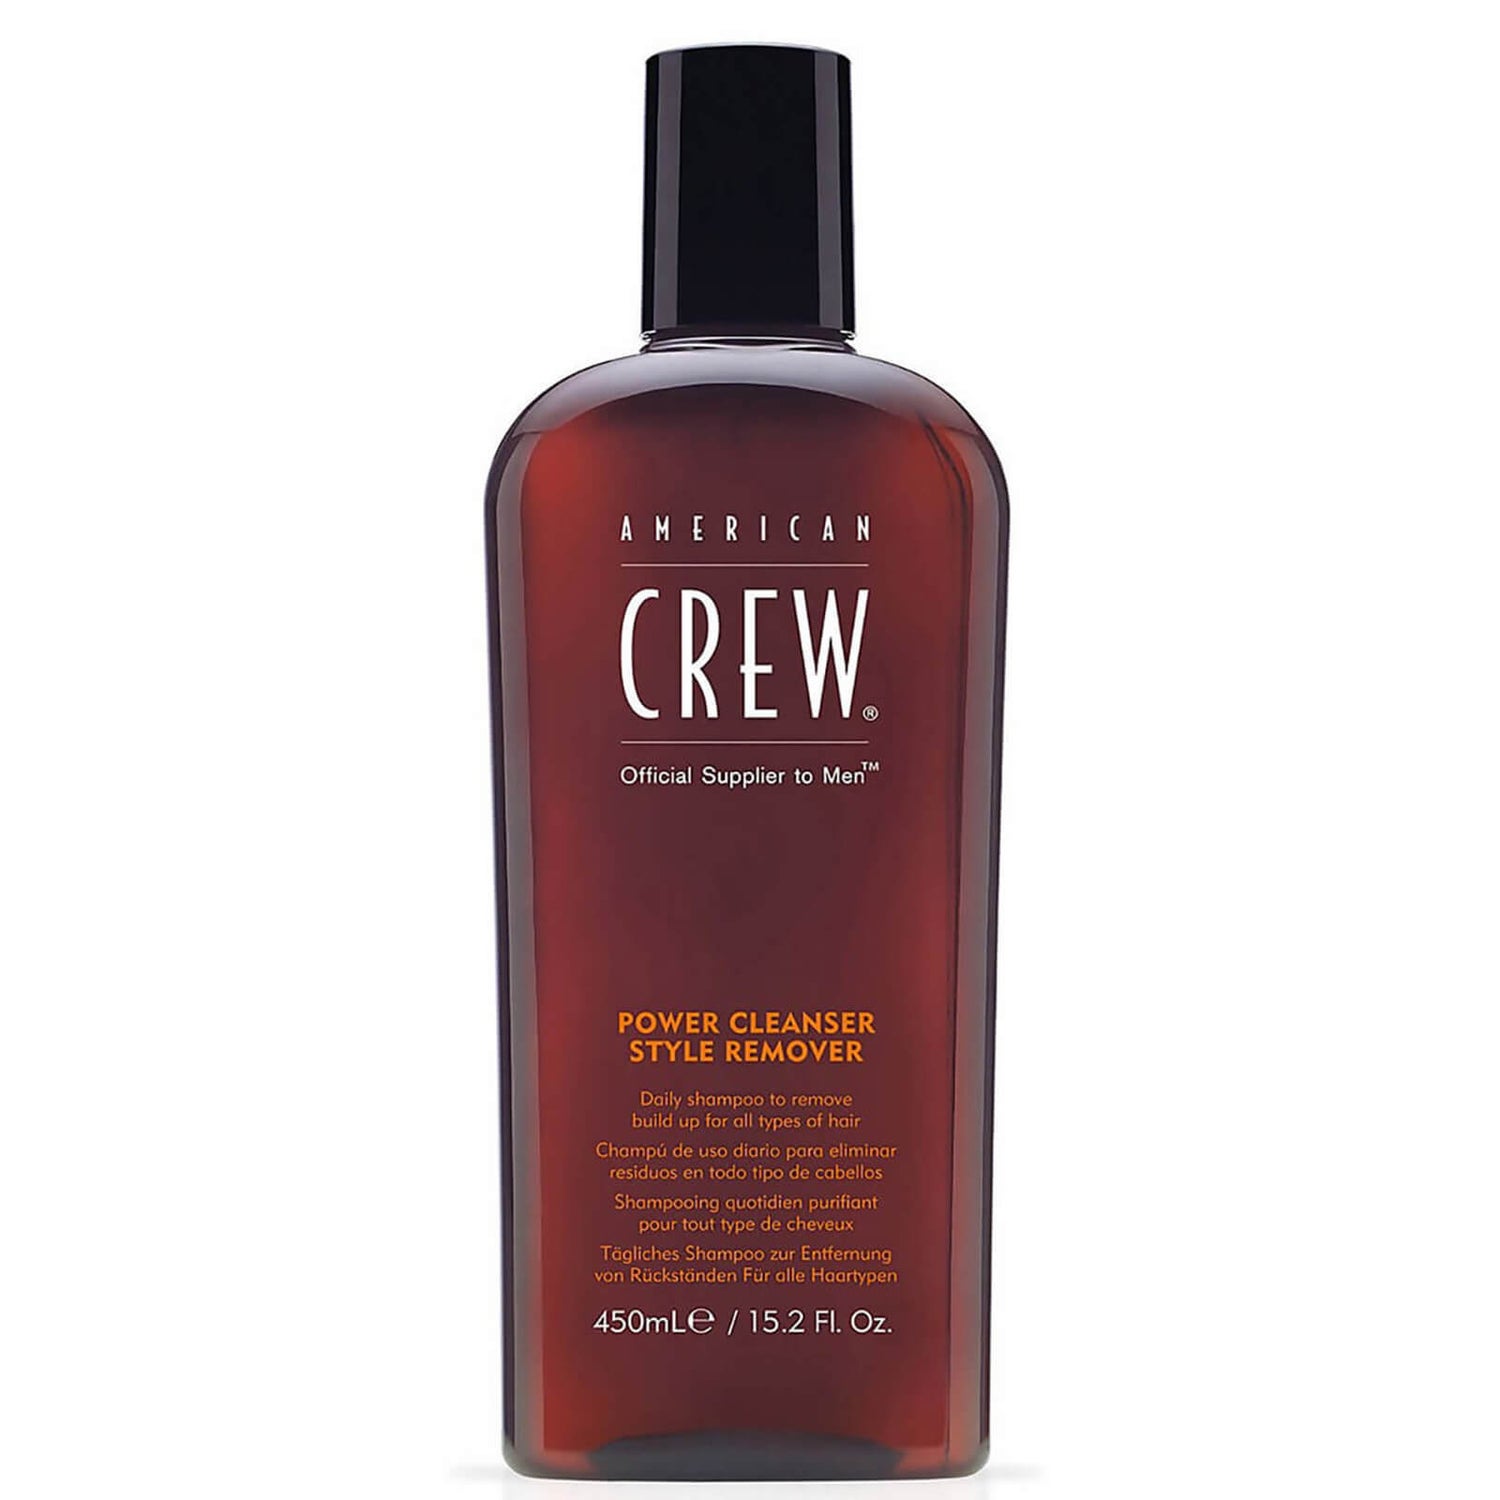 Ежедневный шампунь, очищающий волосы от укладочных средств American Crew Power Cleanser Style Remover (450 мл)